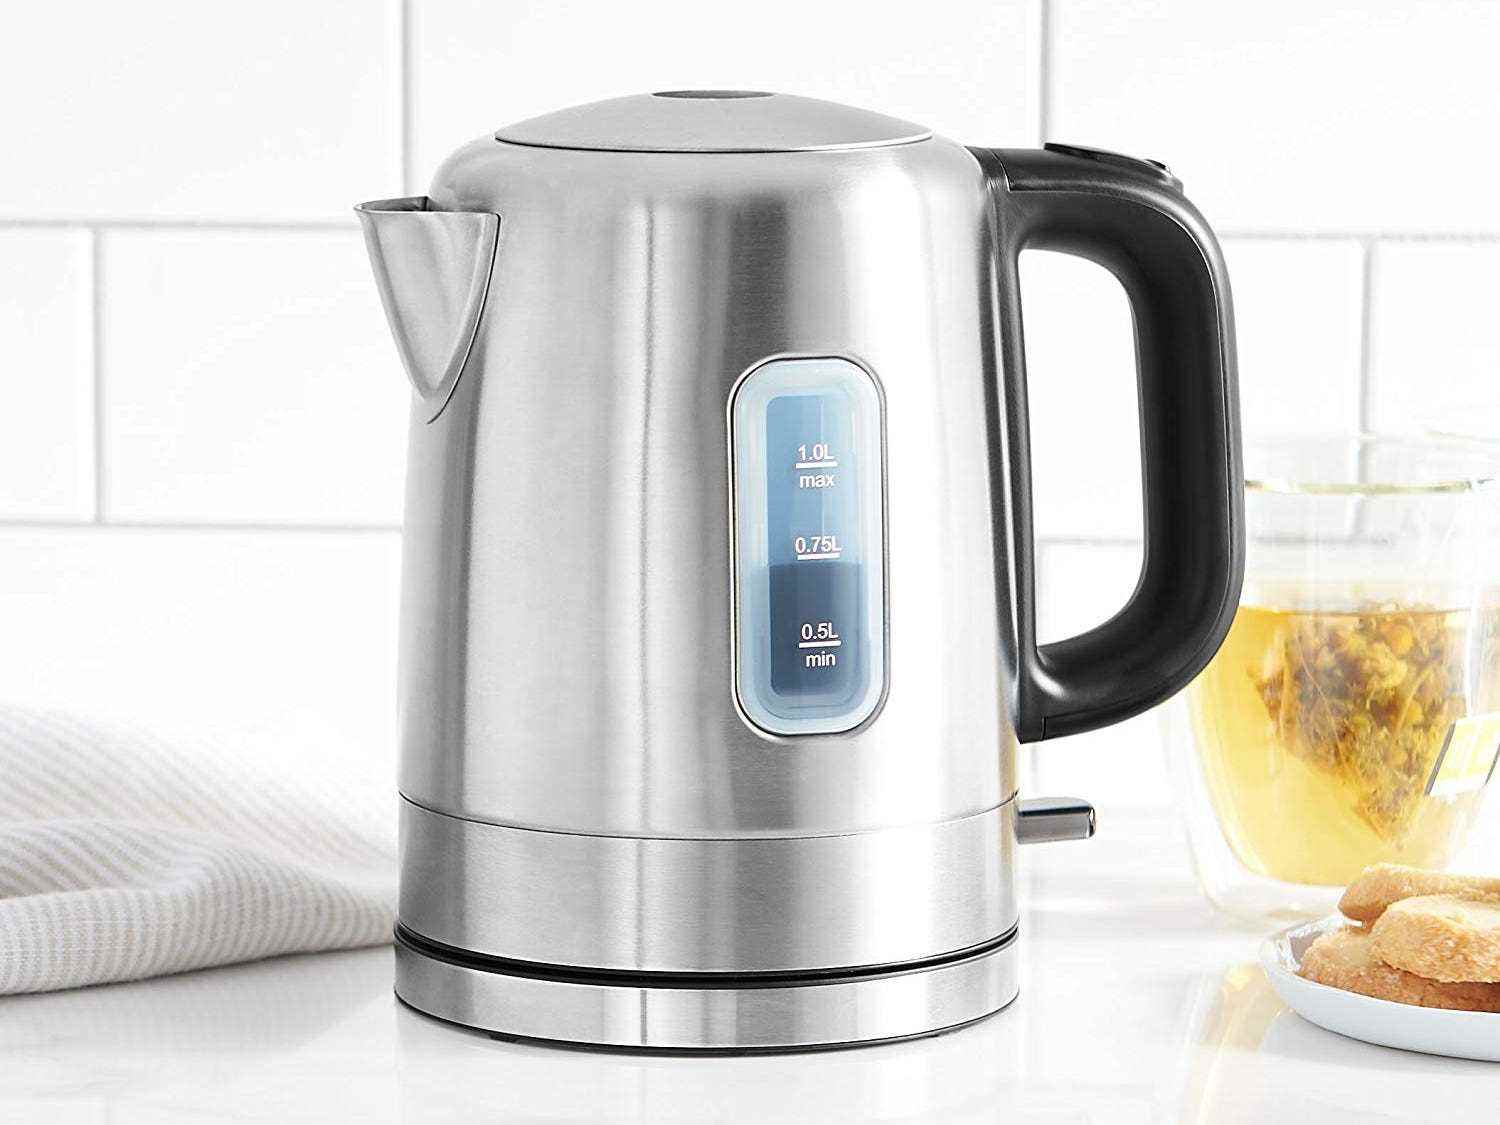 Der Edelstahl-Wasserkocher von AmazonBasics steht auf einer weißen Küchentheke mit einer Teetasse dahinter.